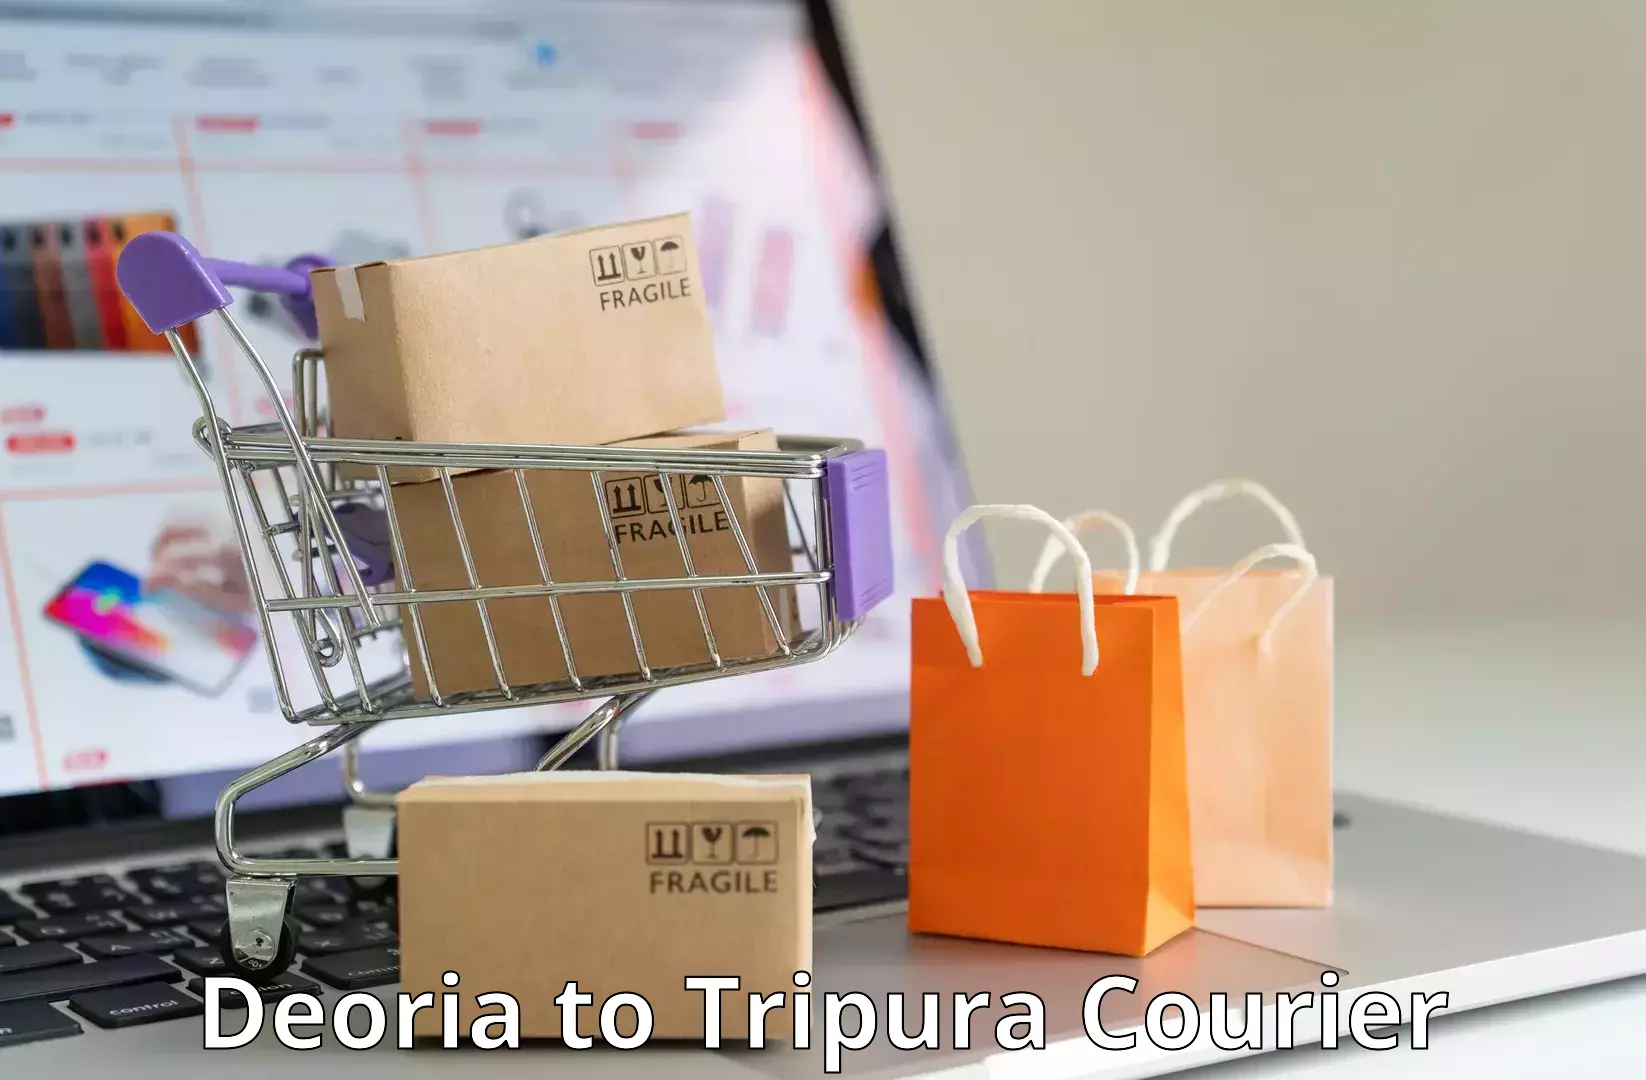 Quick parcel dispatch Deoria to Udaipur Tripura